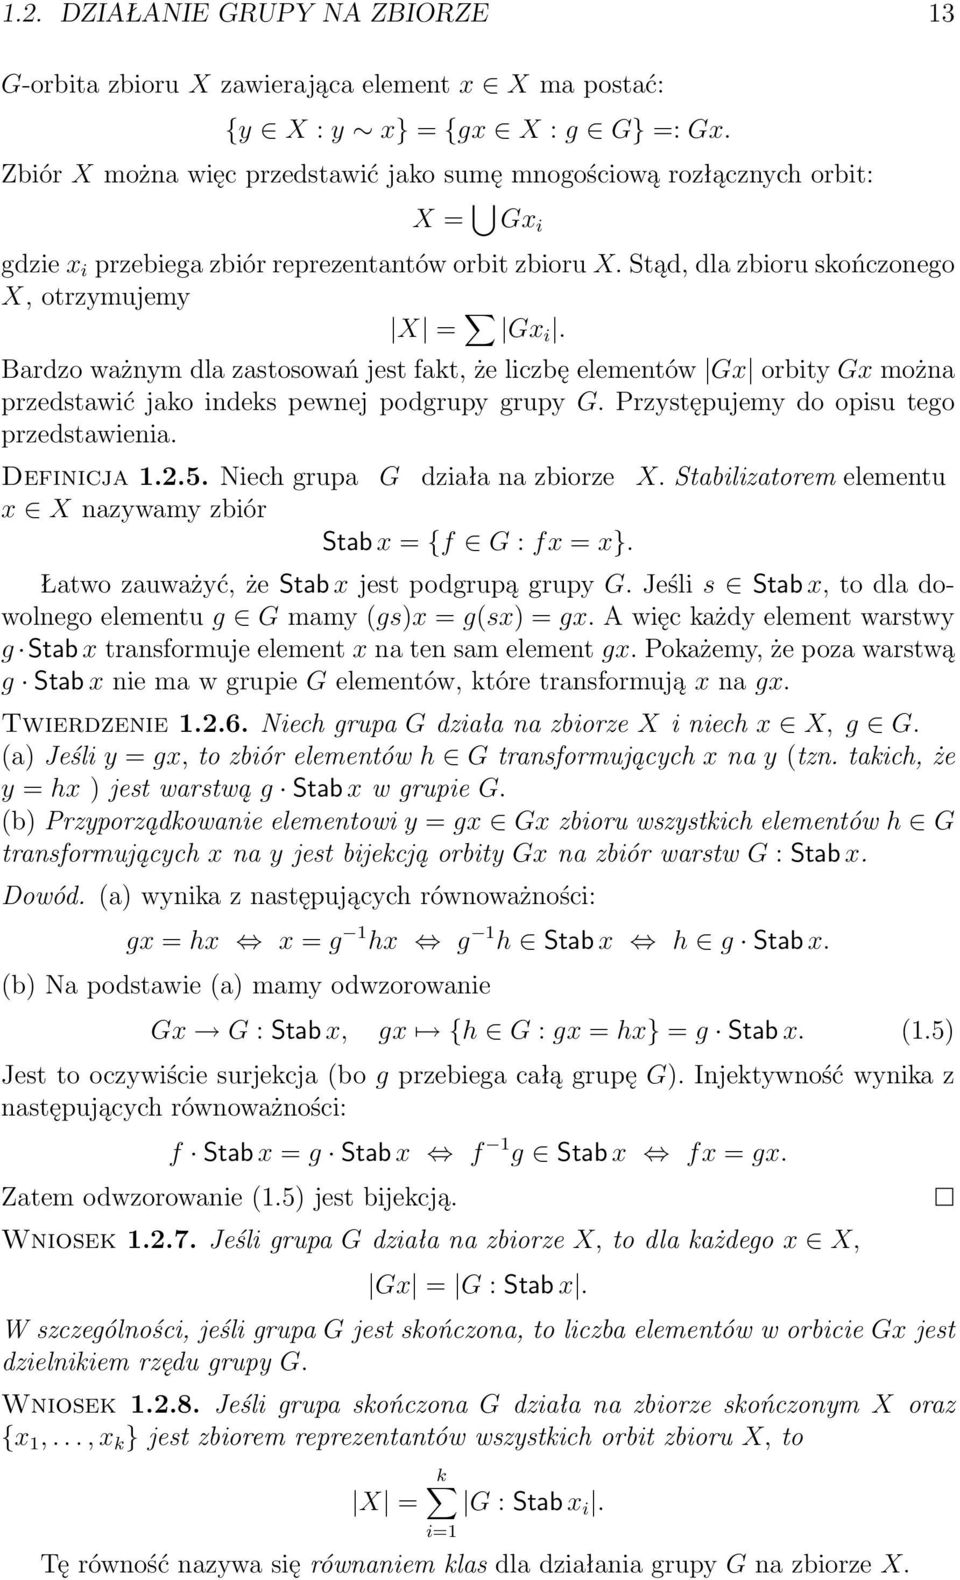 Bardzo ważnym dla zastosowań jest fakt, że liczbę elementów Gx orbity Gx można przedstawić jako indeks pewnej podgrupy grupy G. Przystępujemy do opisu tego przedstawienia. Definicja 1.2.5.